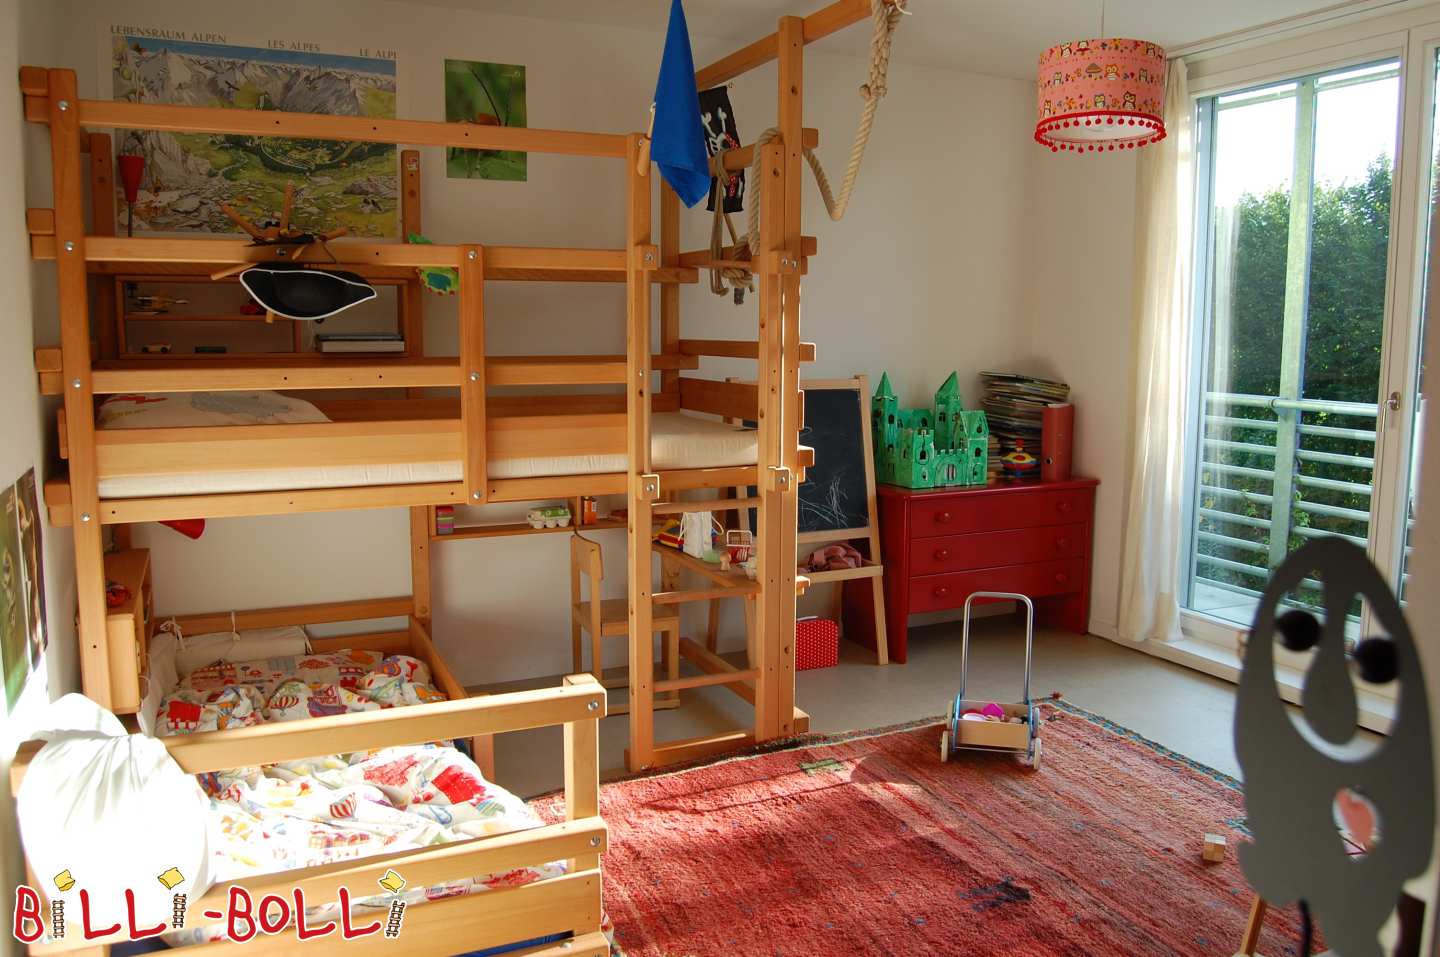 سرير بطابقين يقابله جانبيا في خشب الزان المشمع بالزيت (الفئة: سرير بطابقين فوق الزاوية المستخدمة)